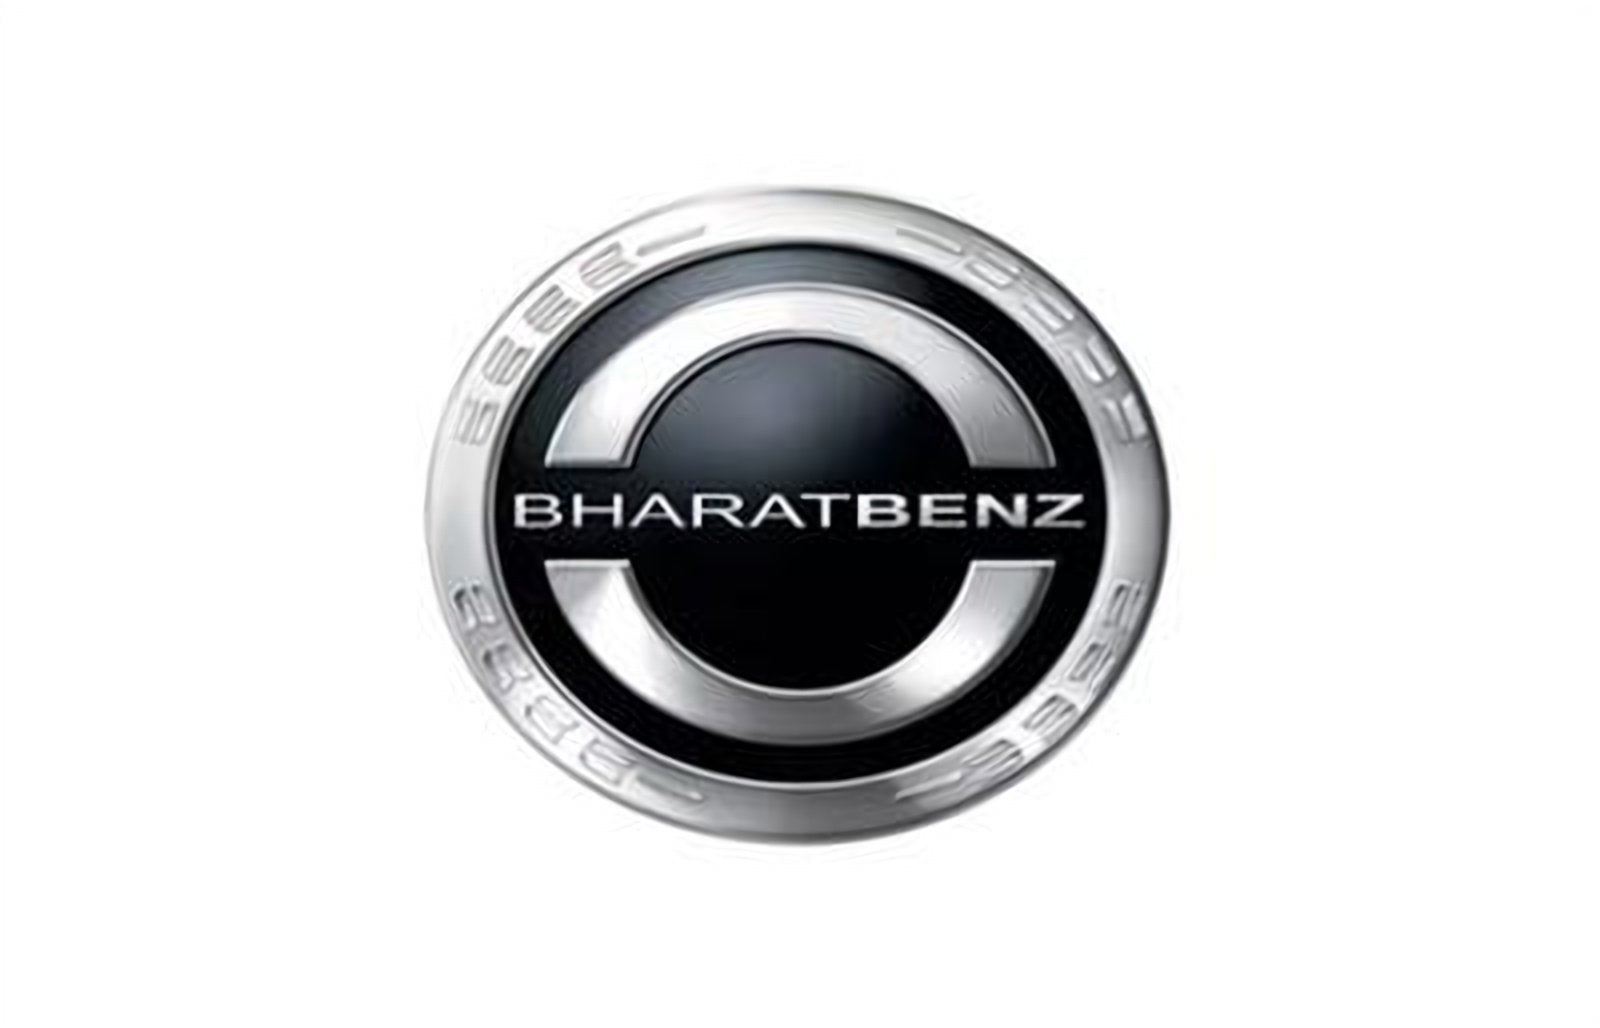 logo della collezione batterie bharatbenz di puntobatterie